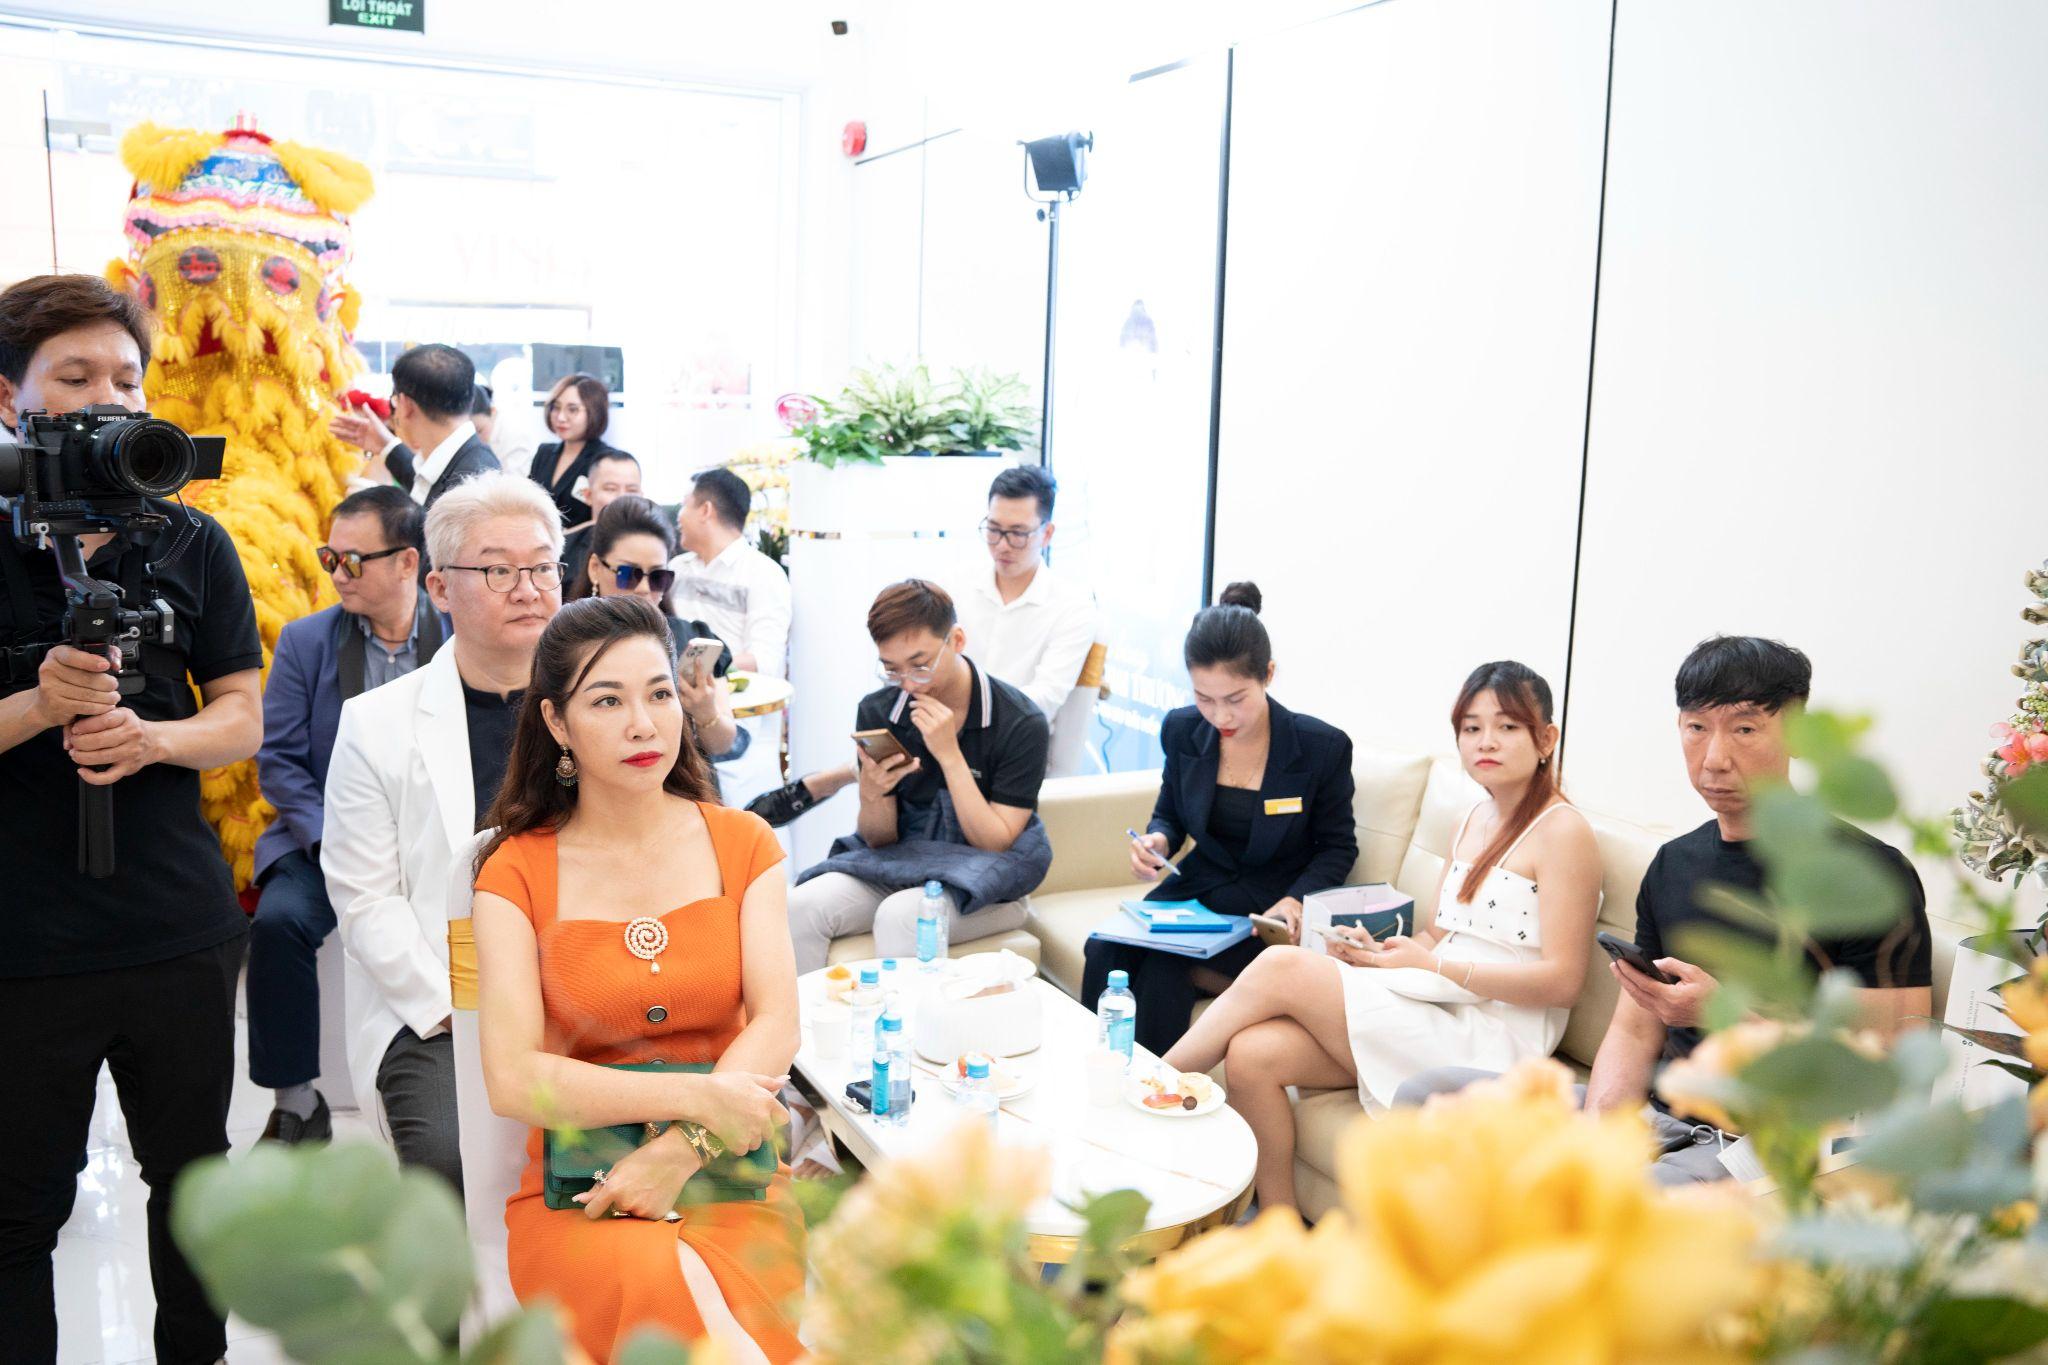 Chính thức ra mắt Phòng khám chuyên khoa da liễu Viện thẩm mỹ HT Beauty - 10 năm 1 hành trình kiến tạo nét đẹp Việt - ảnh 2